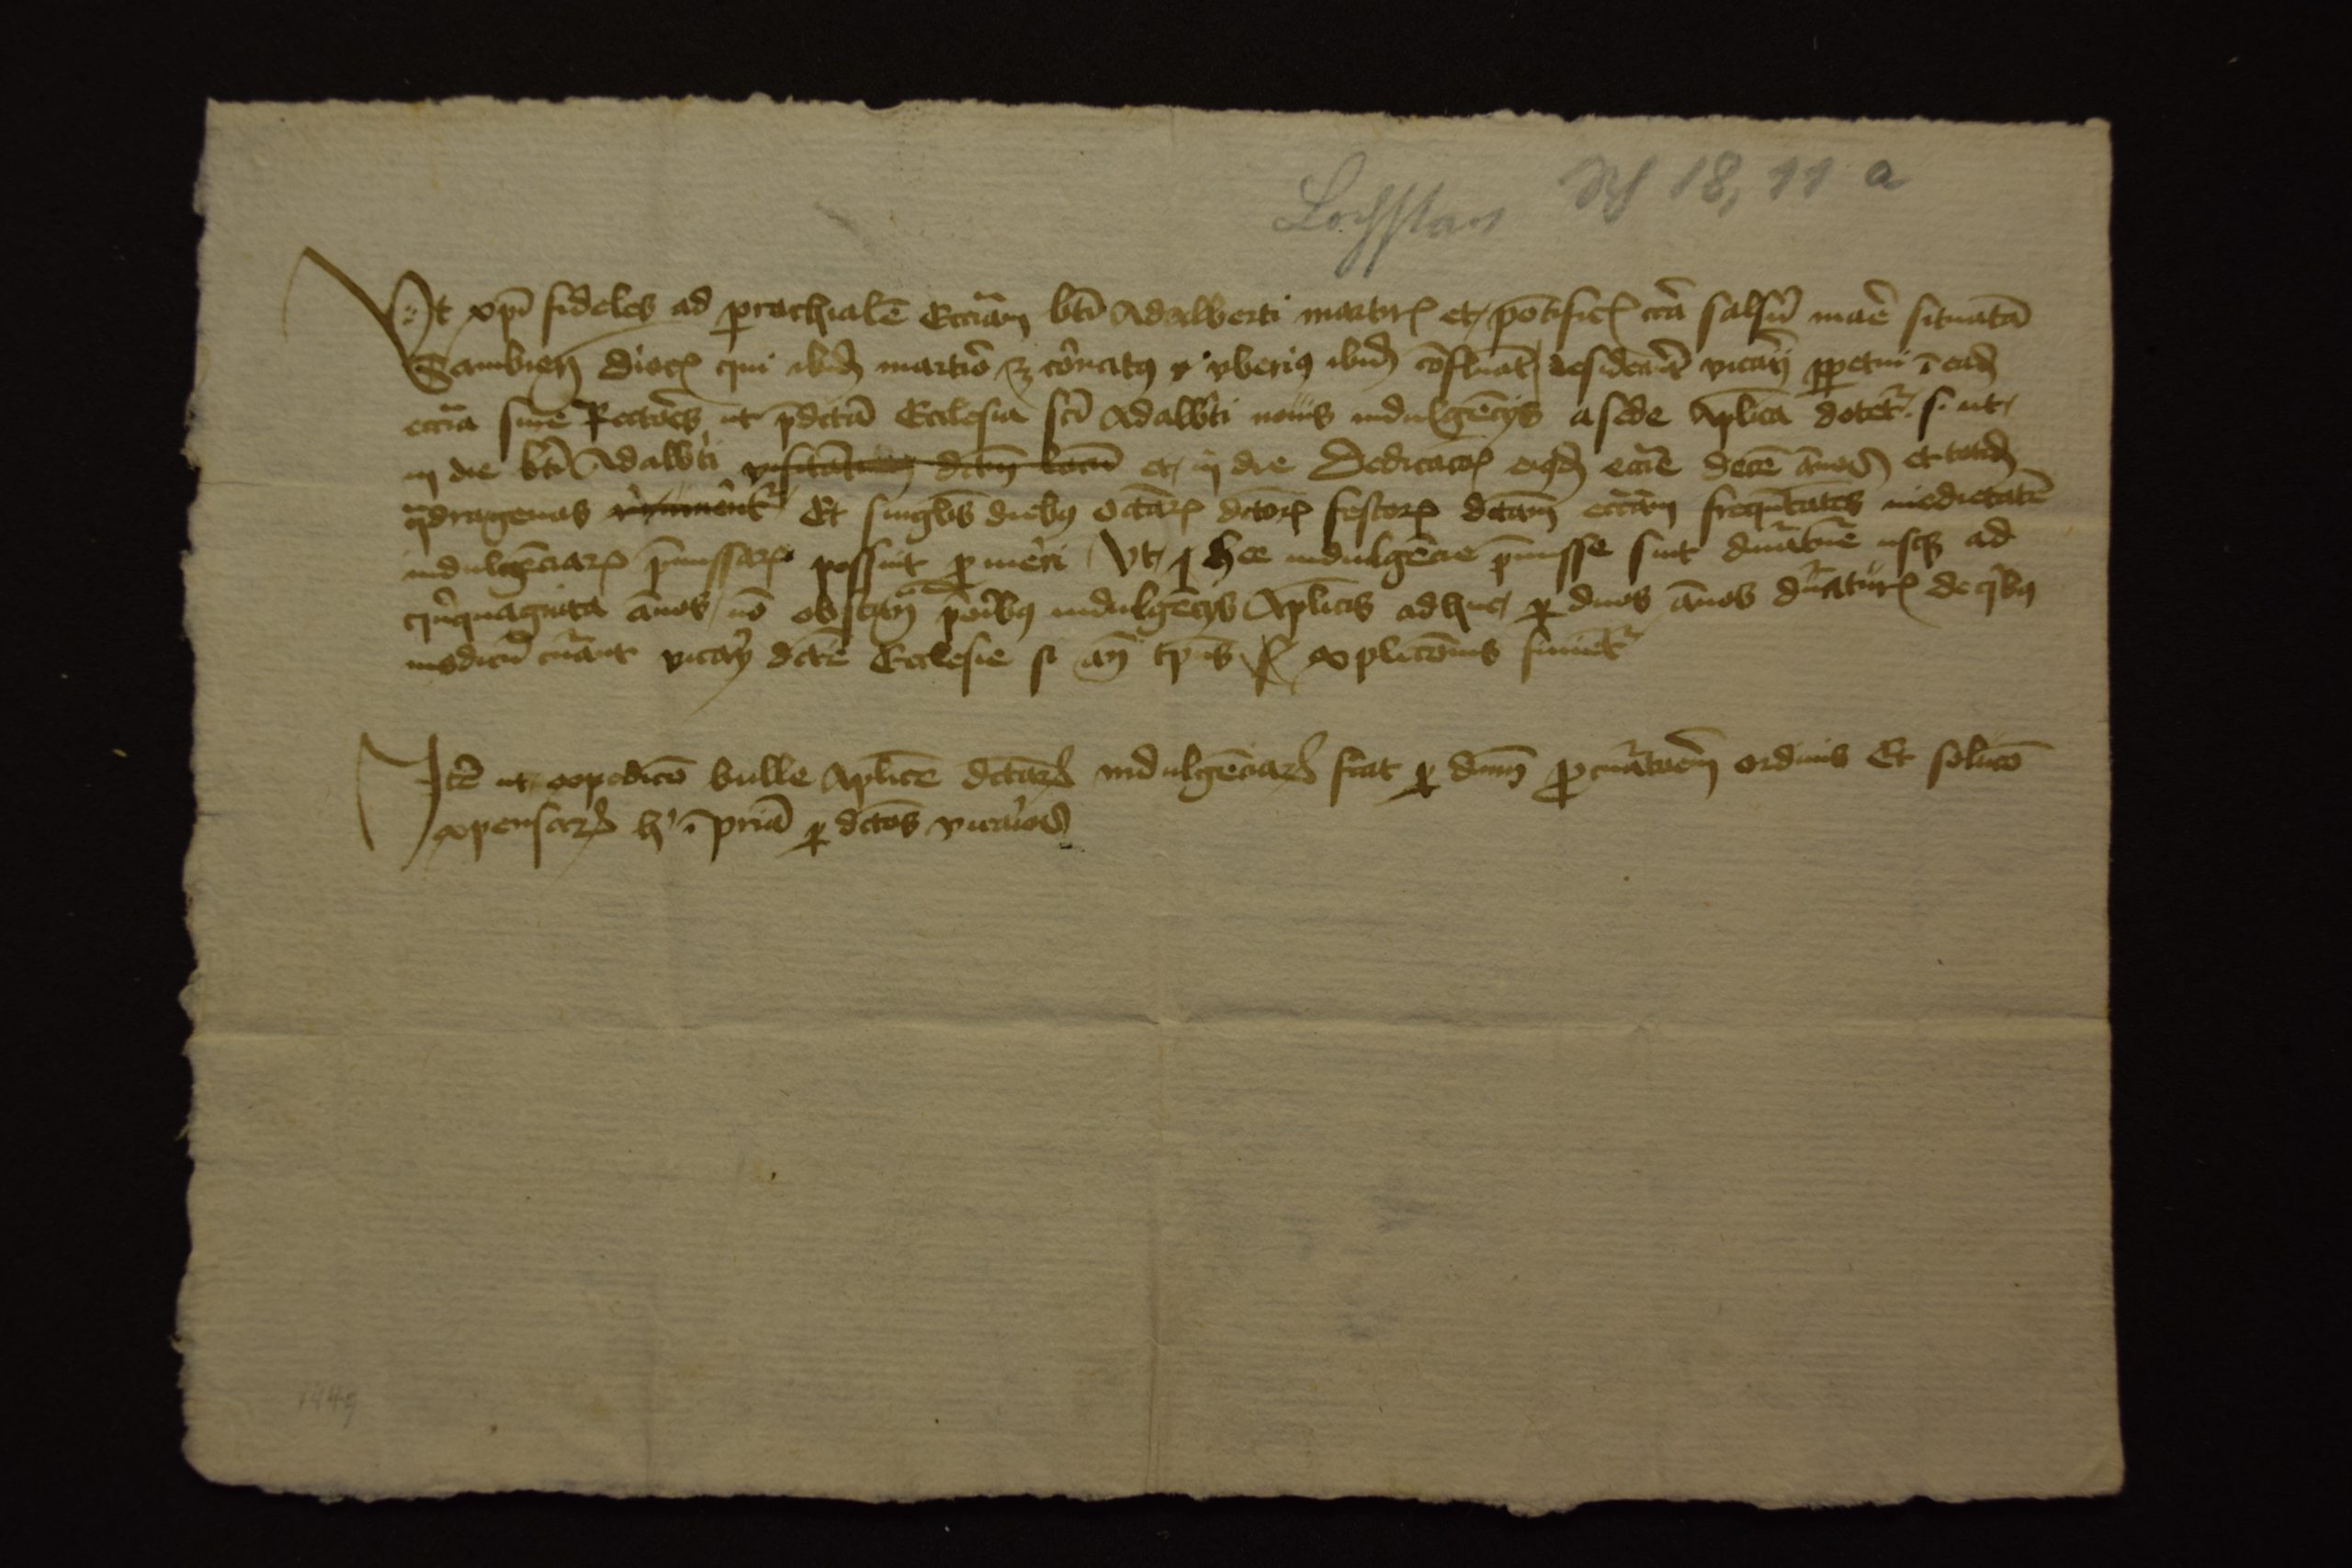 Diese Bild zeigt ein handschriftliches Dokument zu requests for a perpetual vicarage for the St Adalbert’s church in Lochstedt.